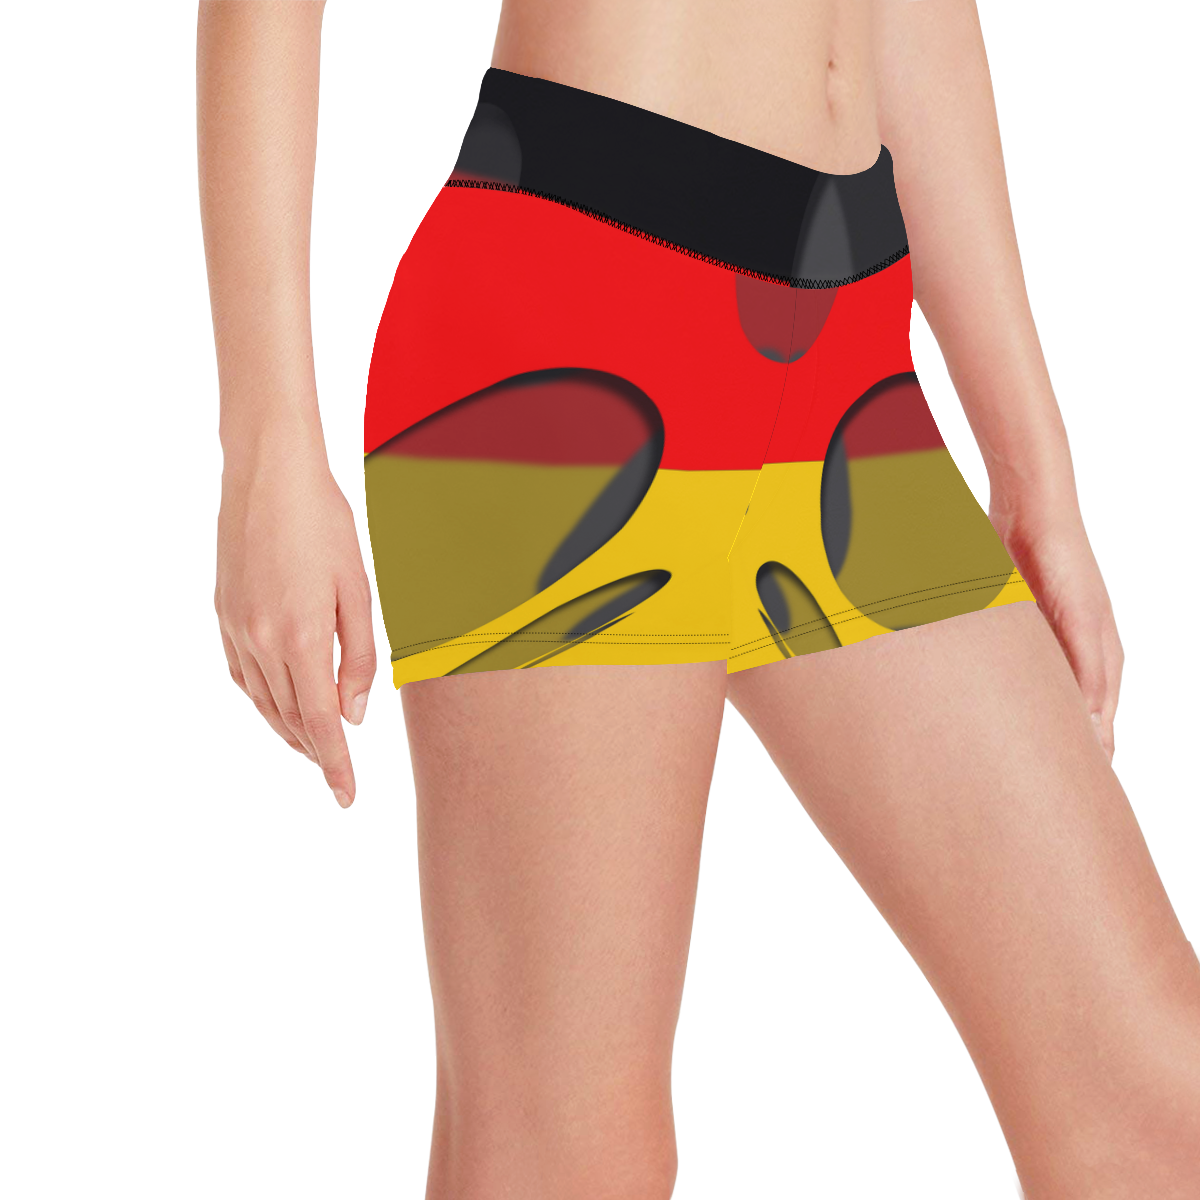 The Flag of Germany Women's All Over Print Short Leggings (Model L28)